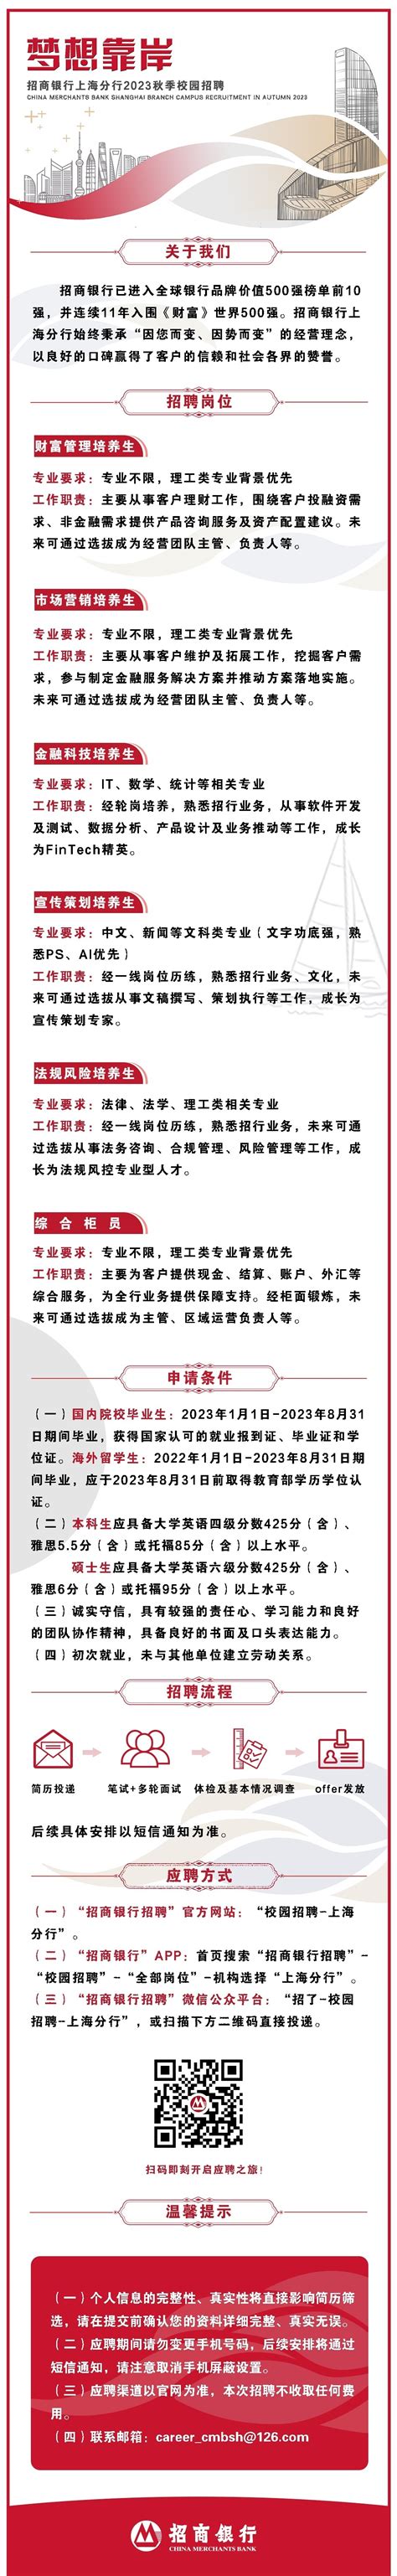 2013年11月16日上海杨浦人才广场大型综合人才招聘会